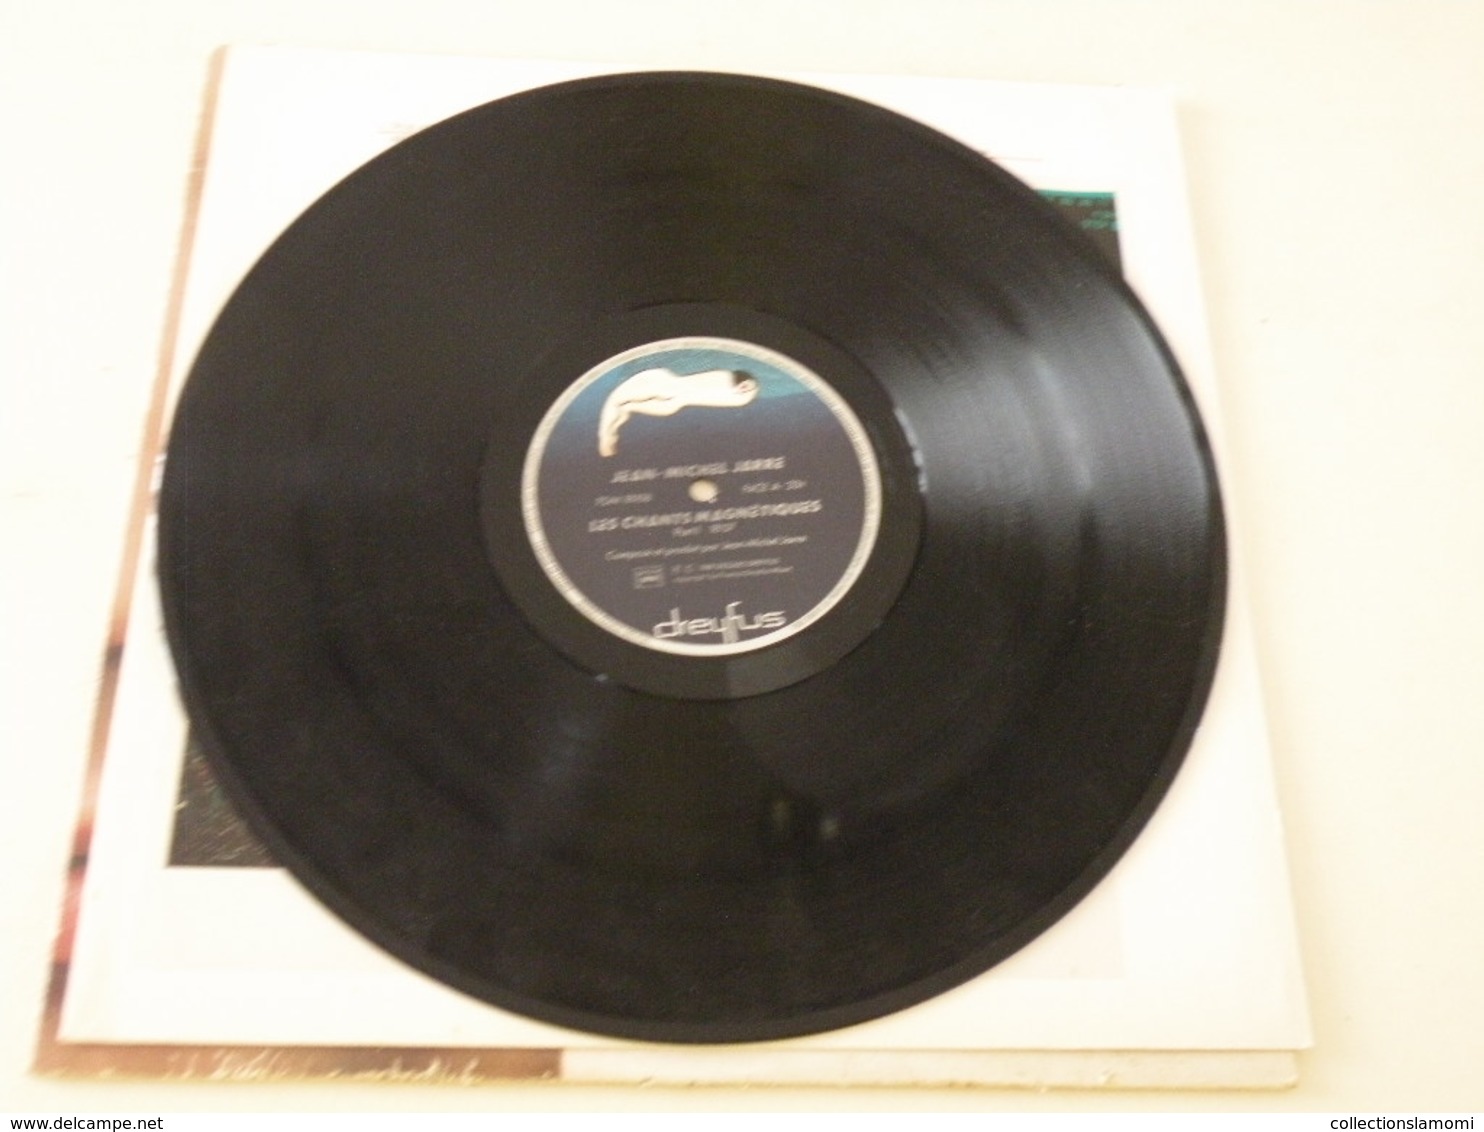 Jean Michel Jarre - Les Chants Magnétiques 1981 - (Titres Sur Photos) - Vinyle 33 T LP - Musicales